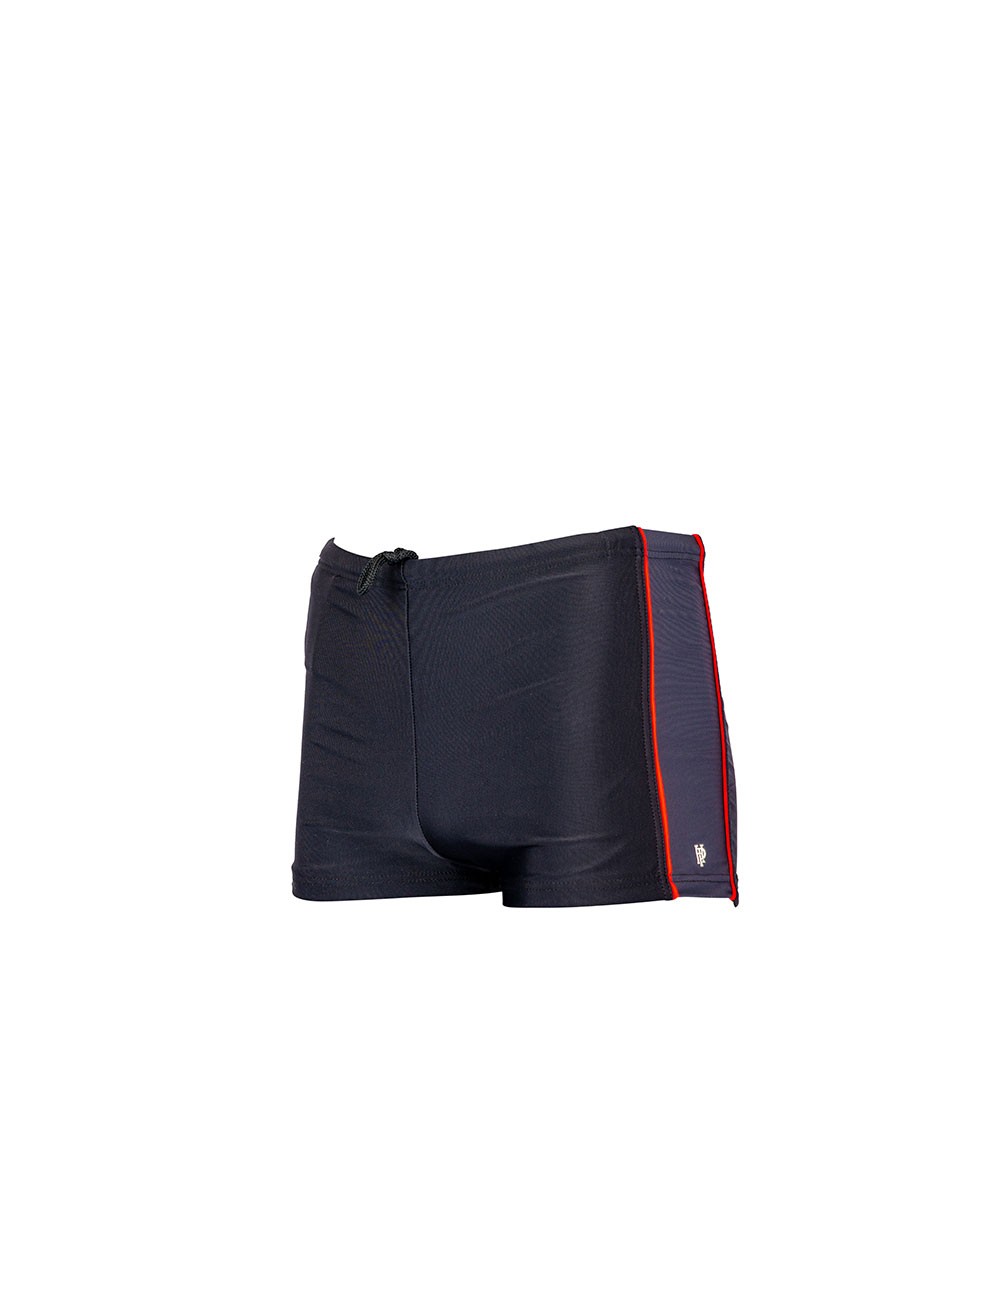 Boxer de bain homme uni tricolor noir/gris/rouge disponible de la petite à la grande taille T1 à T12